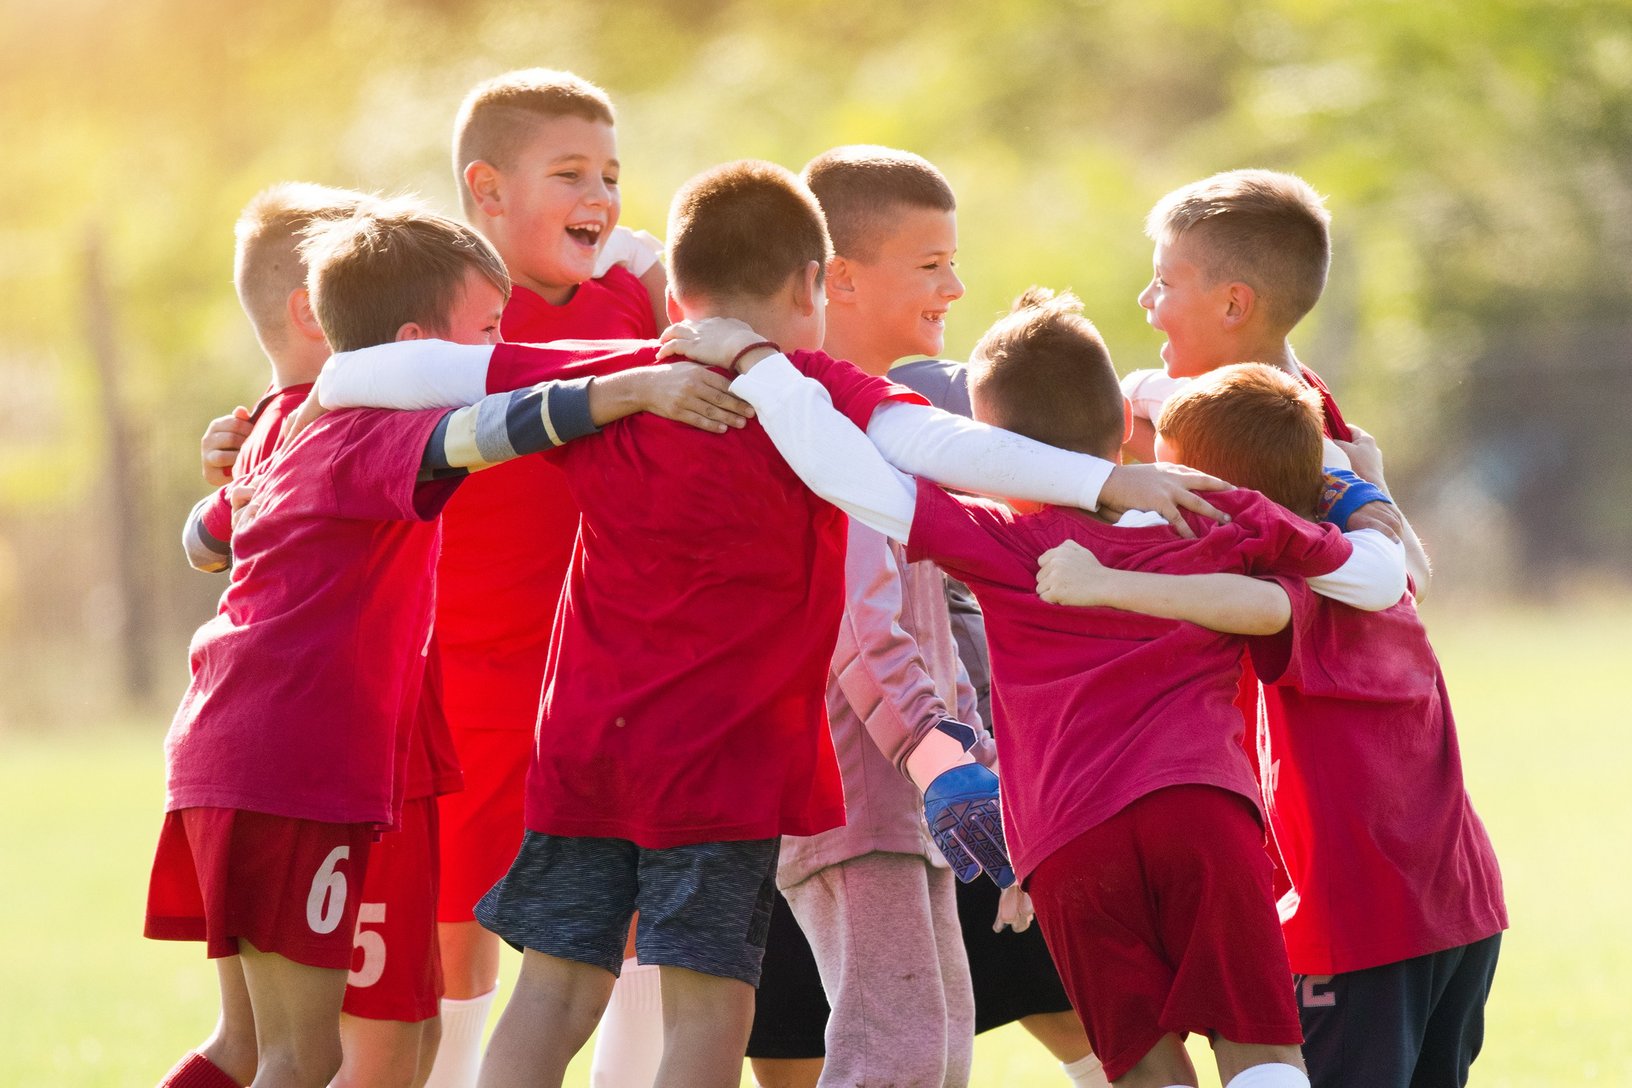 Eine Gruppe von jungen Fußballspielern in roten Trikots bildet einen Kreis und legt die Arme umeinander, ein Ausdruck von Teamgeist und Zusammenhalt vor oder nach einem Spiel. Ein Trainer beobachtet sie im Hintergrund, was die Bedeutung von Führung und Mentorship im Jugendsport unterstreicht.